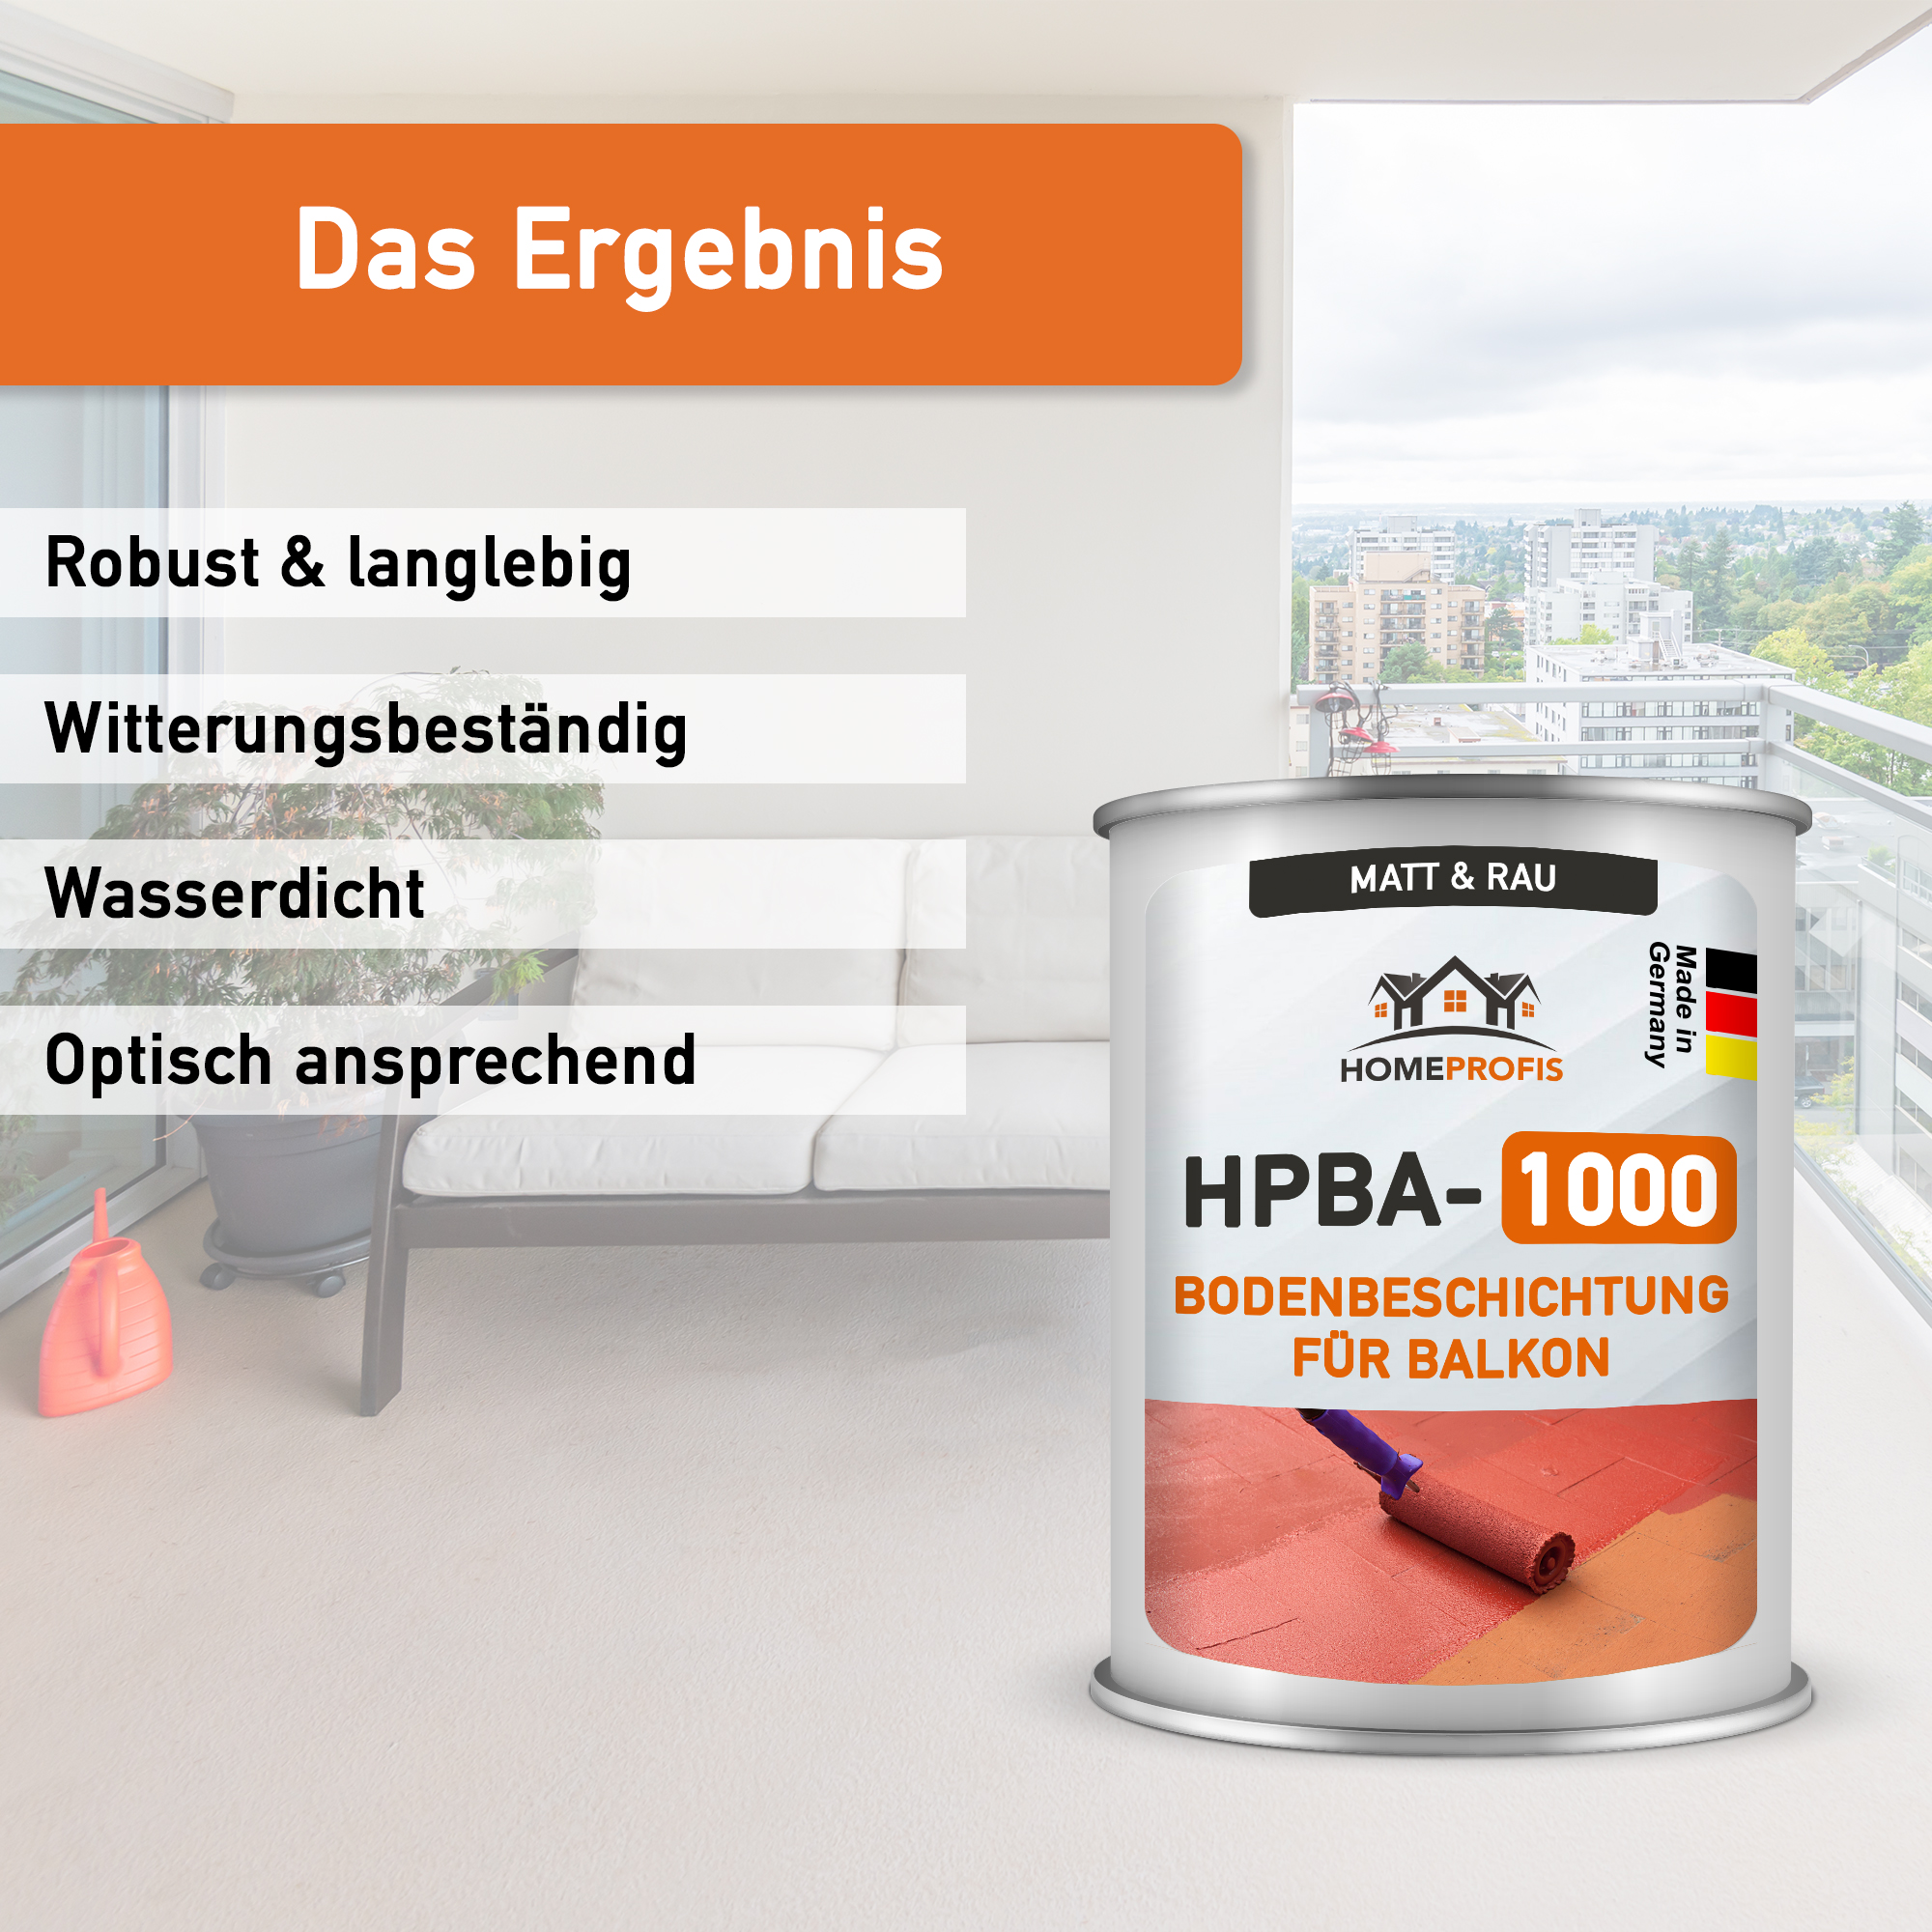 HPBA-1000 rutschfeste 2K Epoxidharz Bodenfarbe für Außen